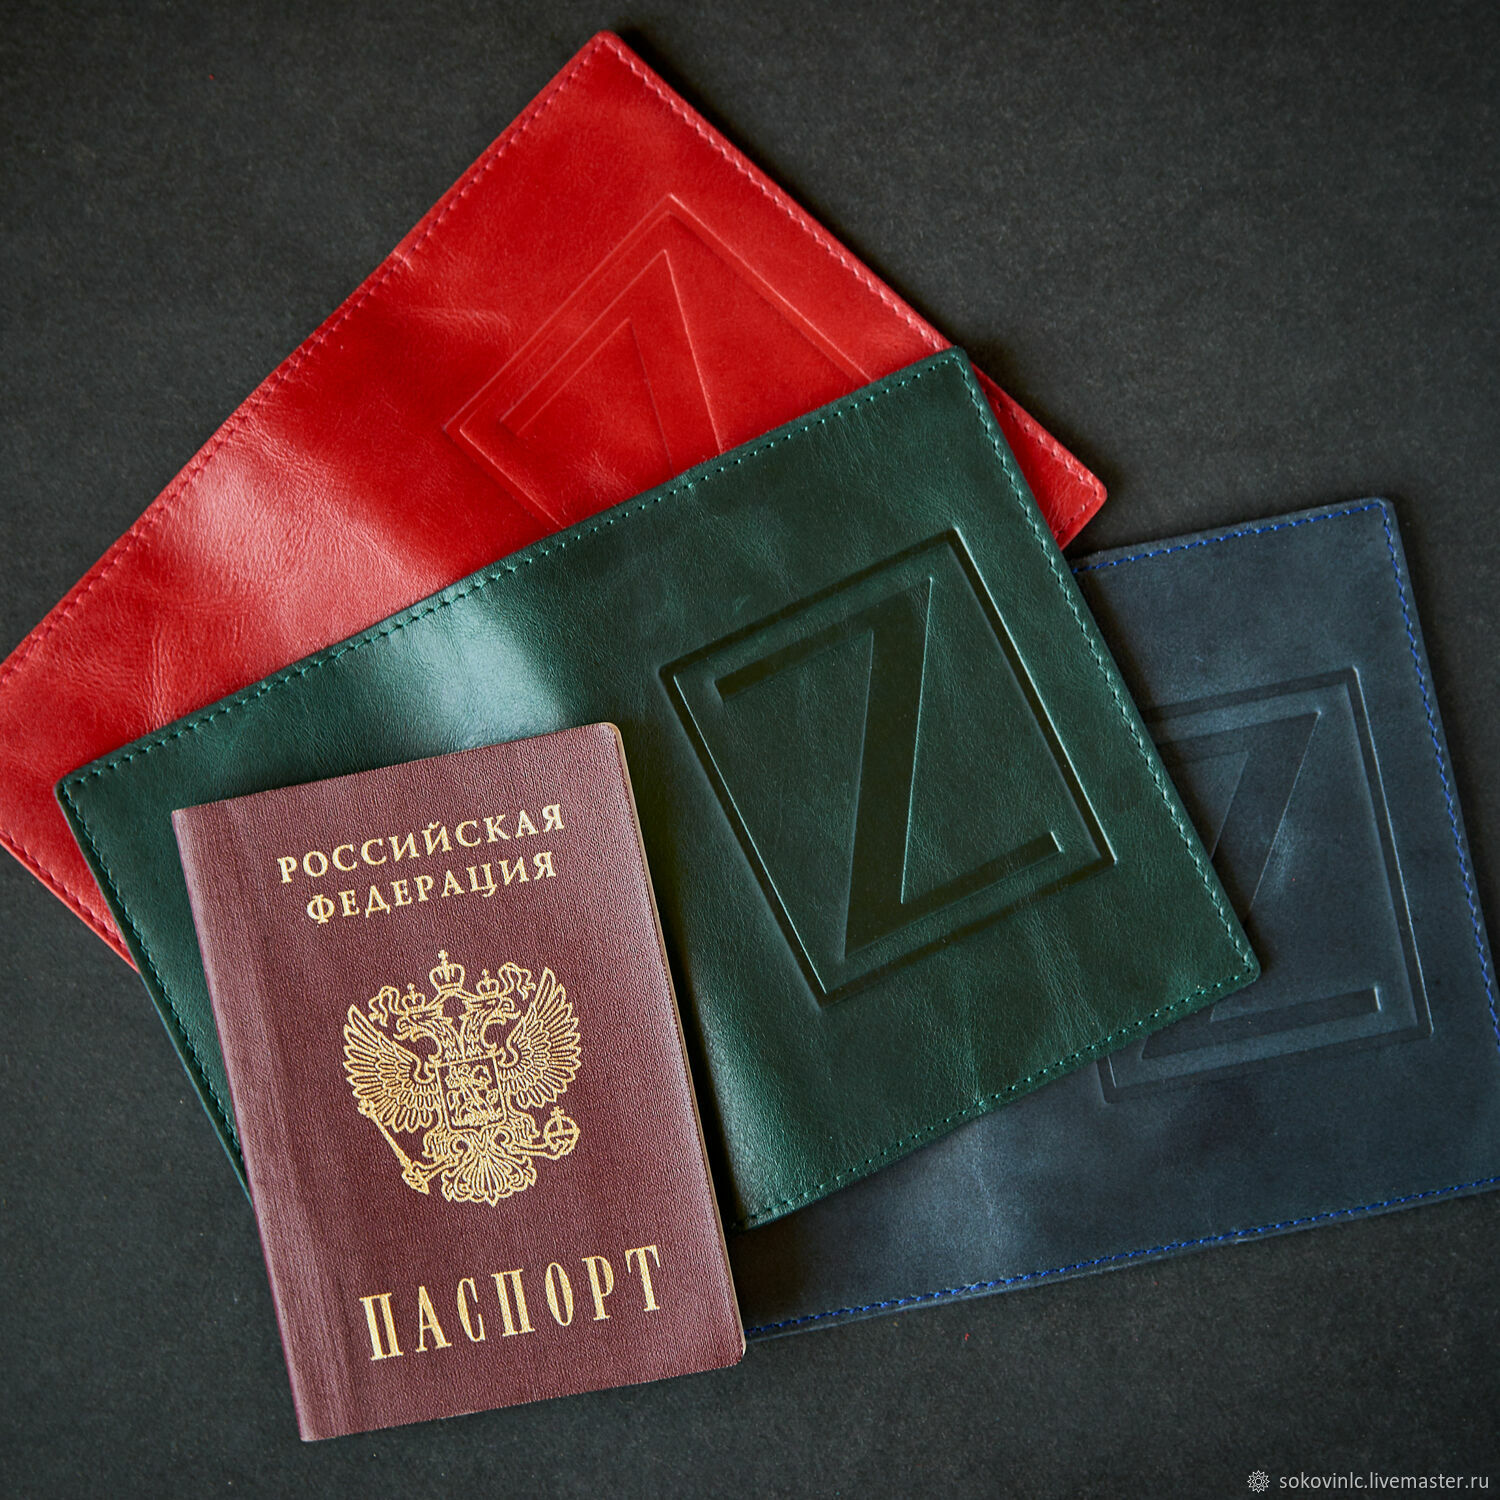 Обложки на паспорт с принтом на заказ в Москве: печать фото и рисунка на чехле для загранпаспорта